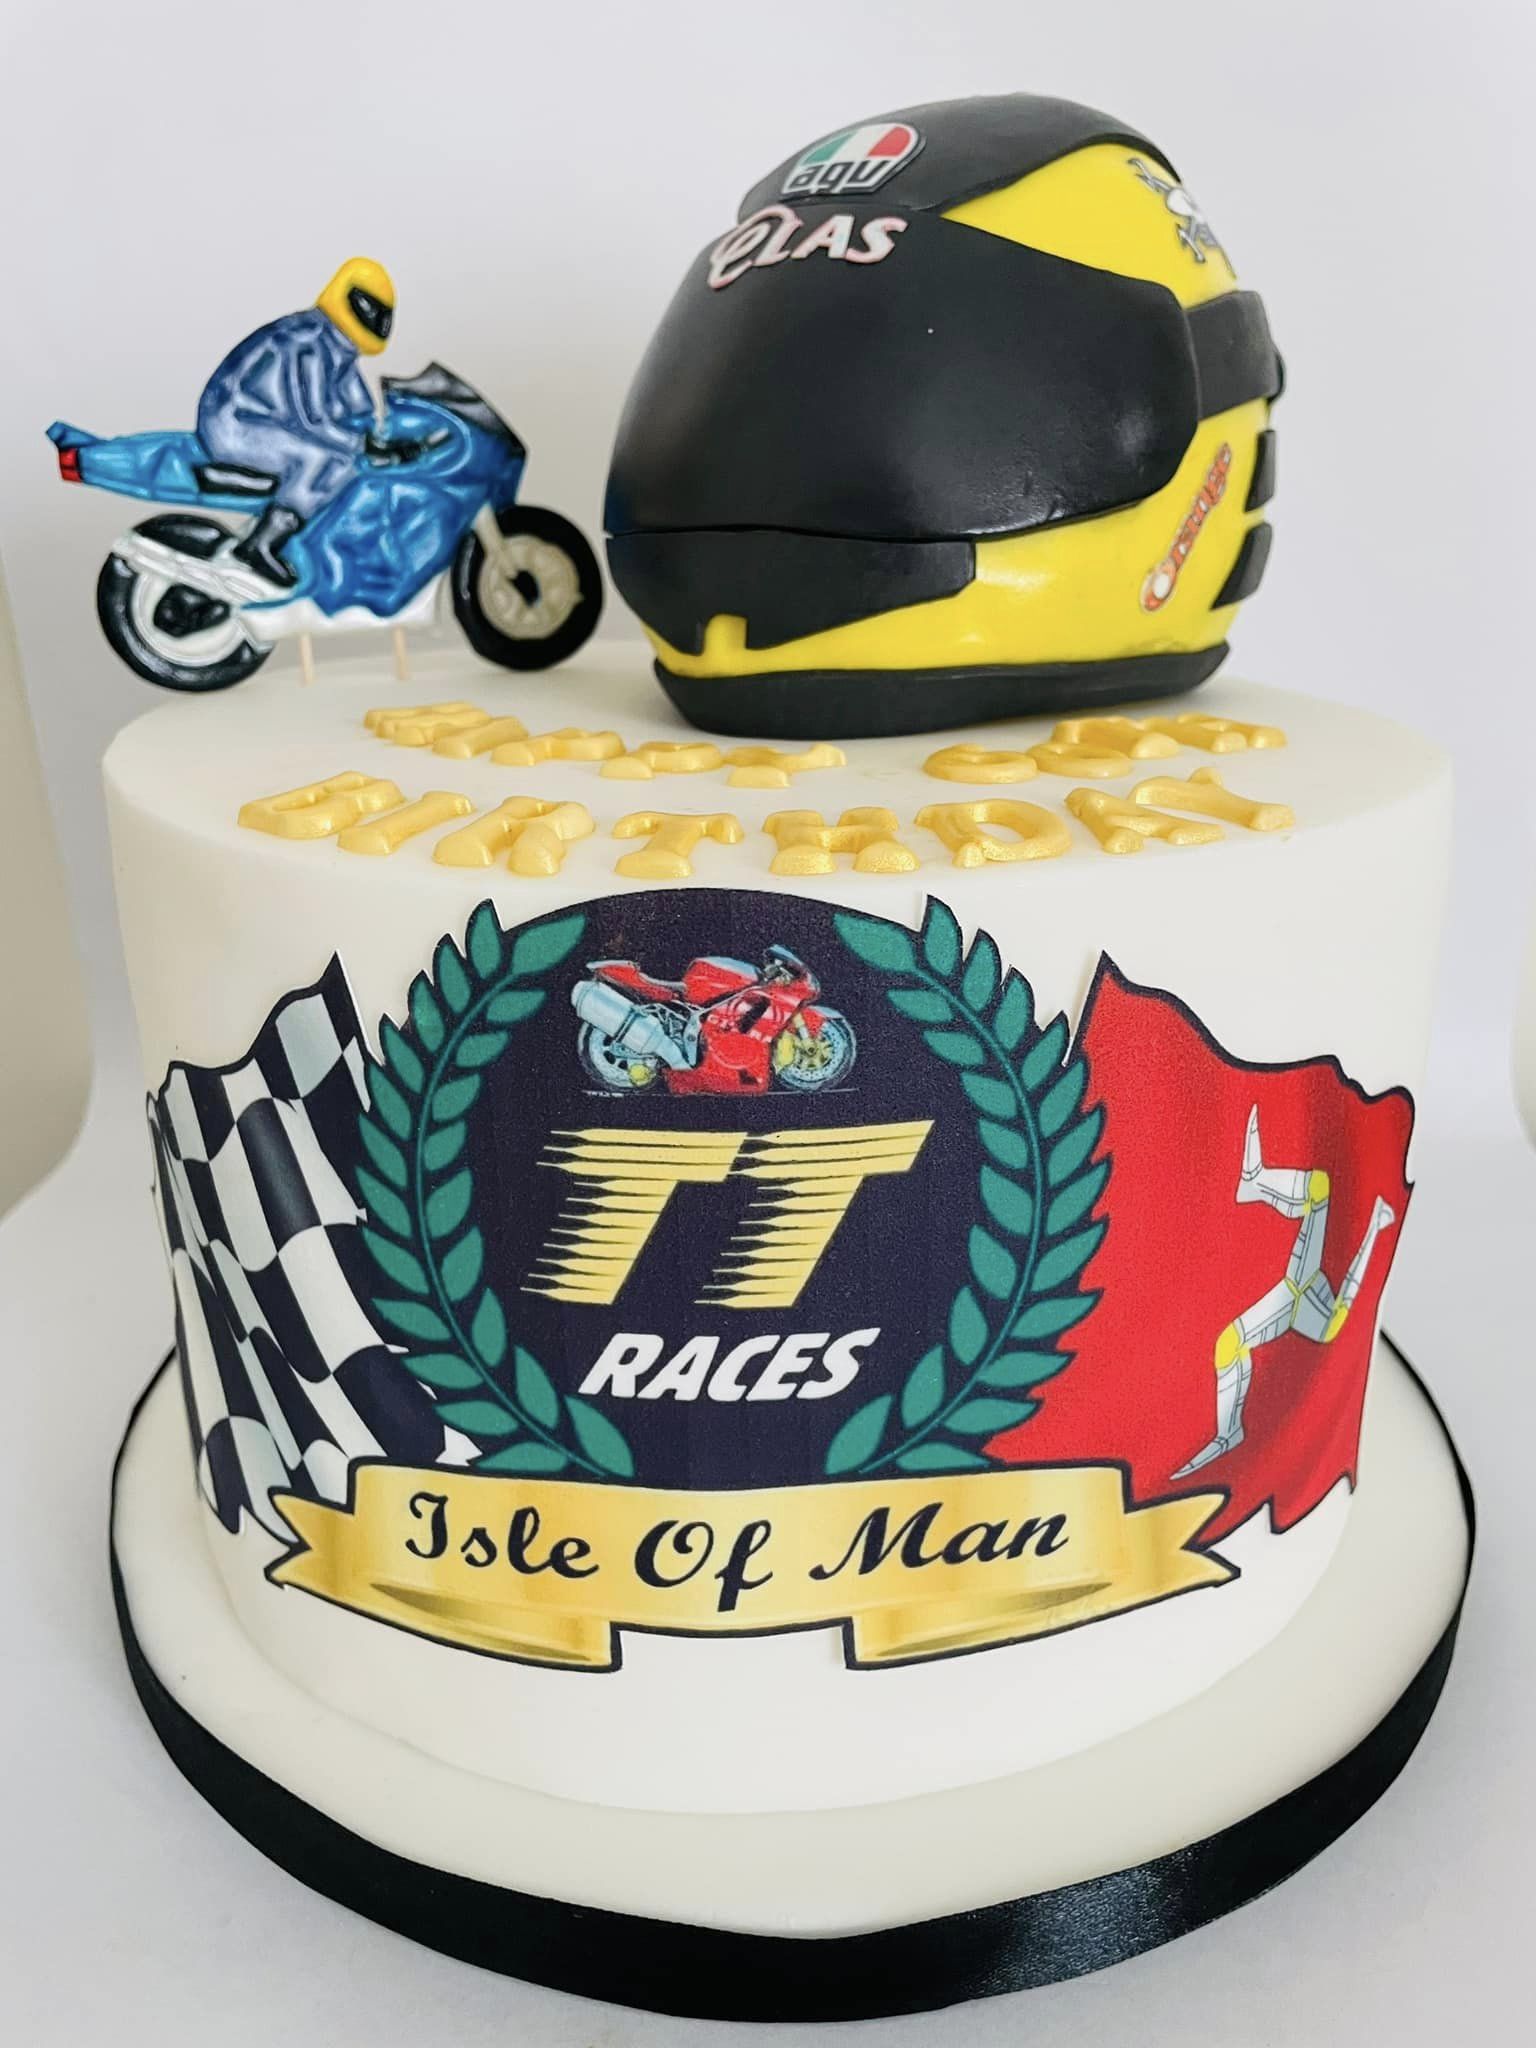 TT motorbike racing themed cake 